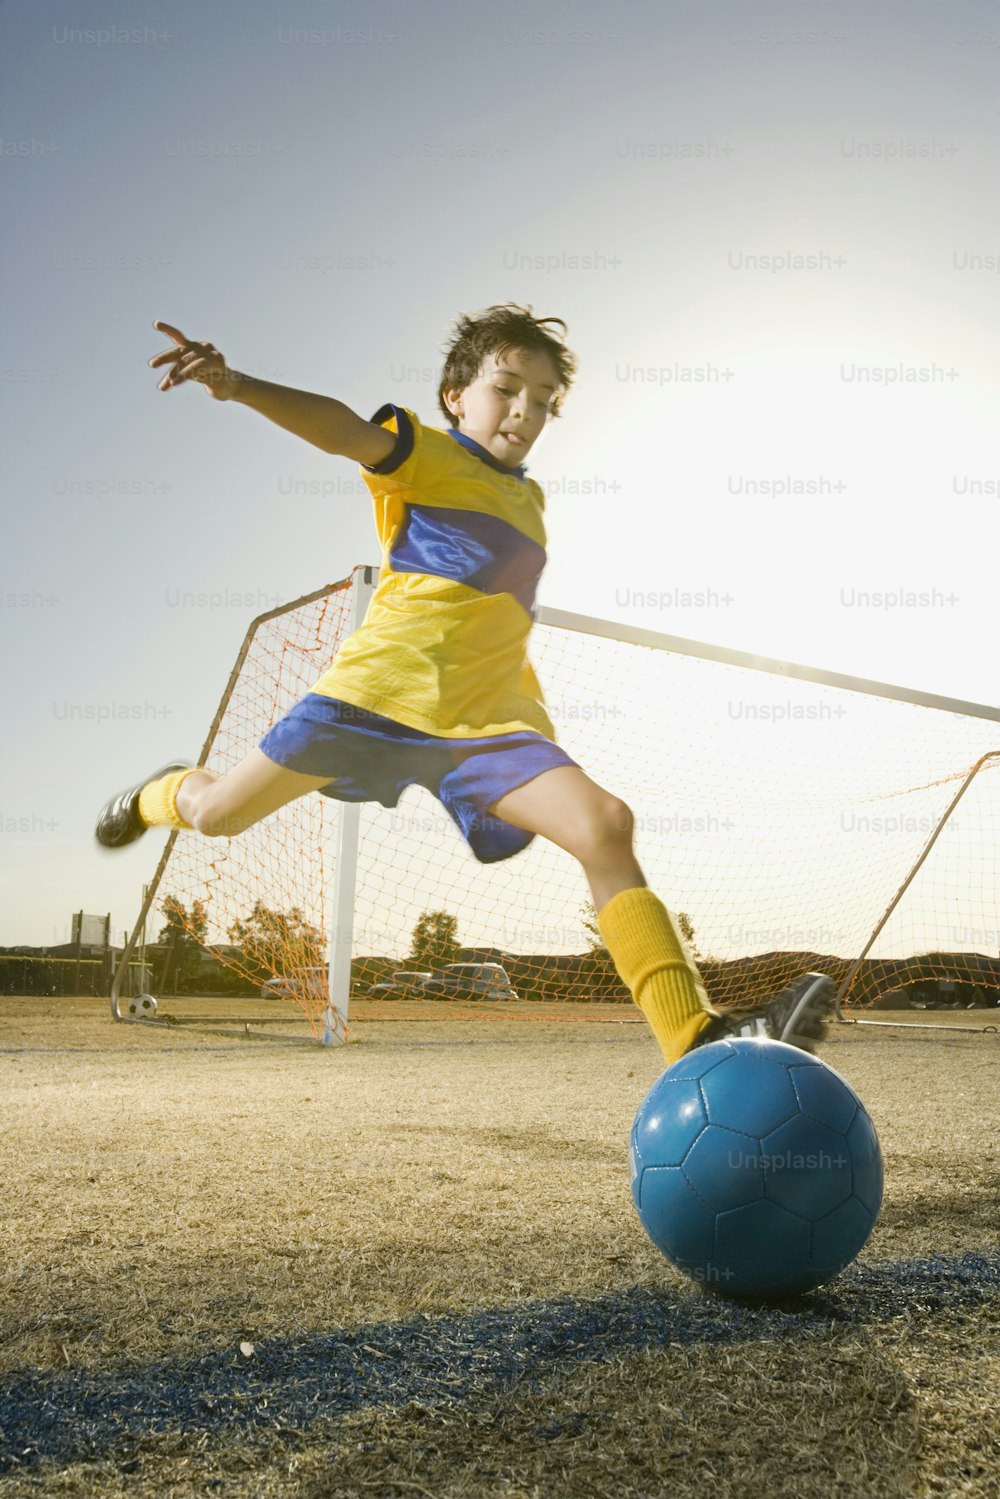 Un giovane che calcia un pallone da calcio intorno a un campo